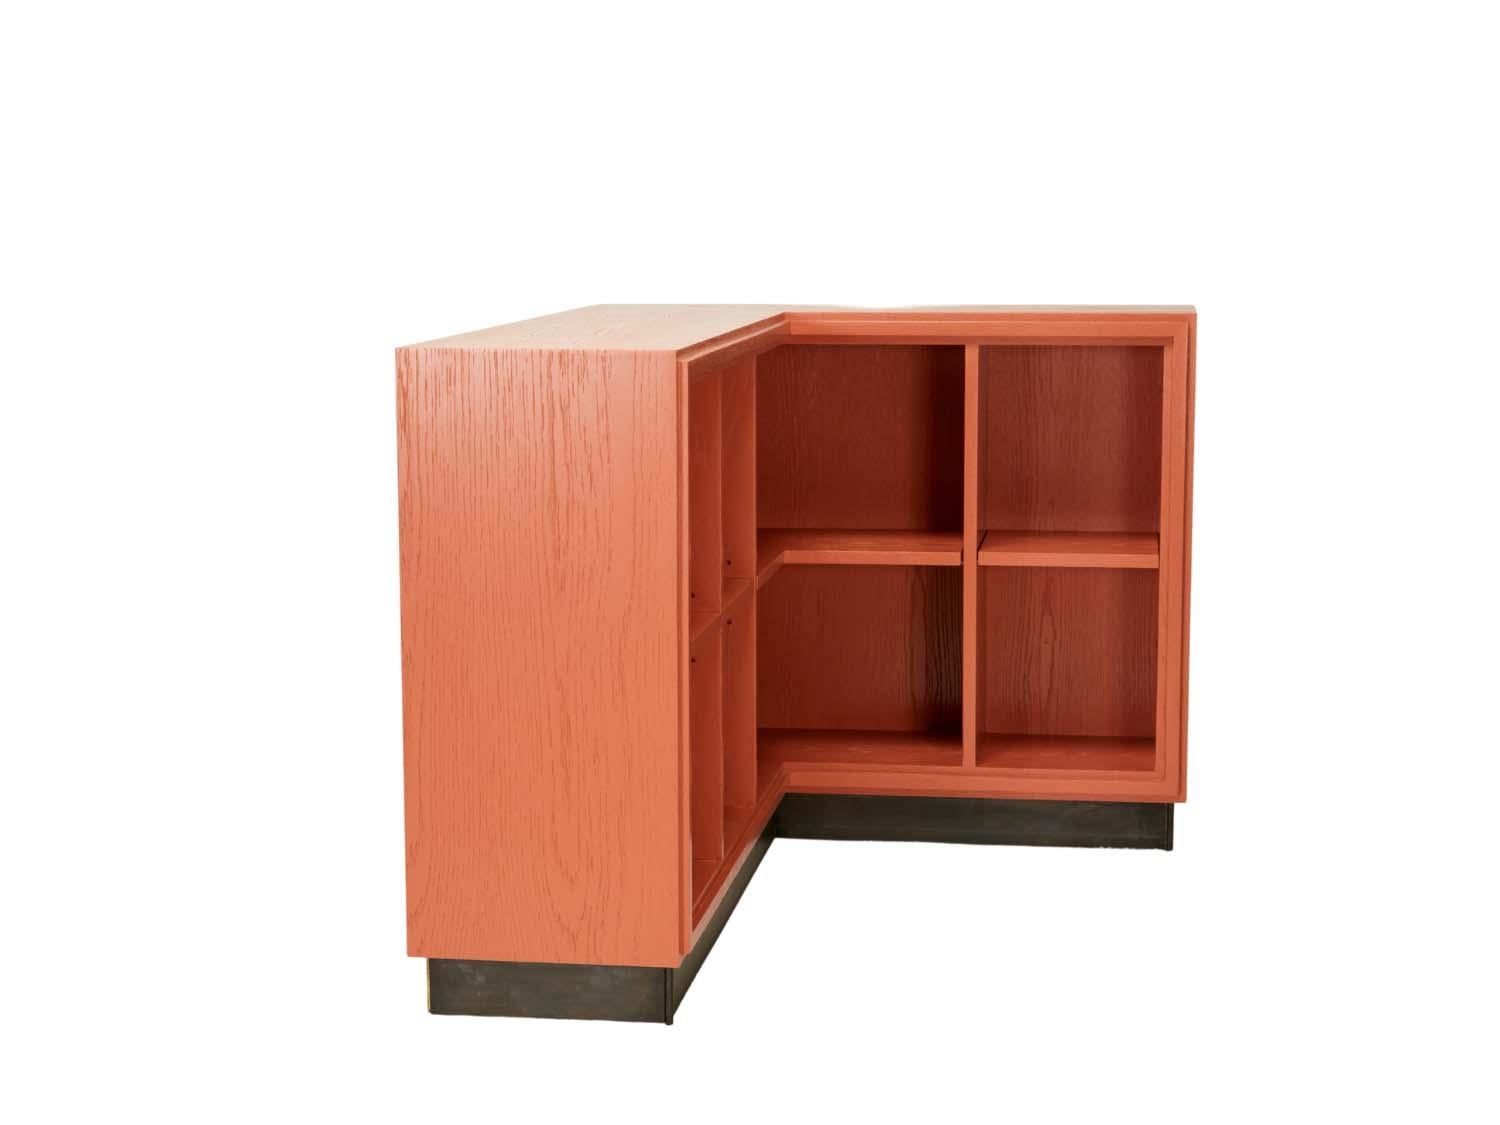 Oak L-shaped corner shelf unit.